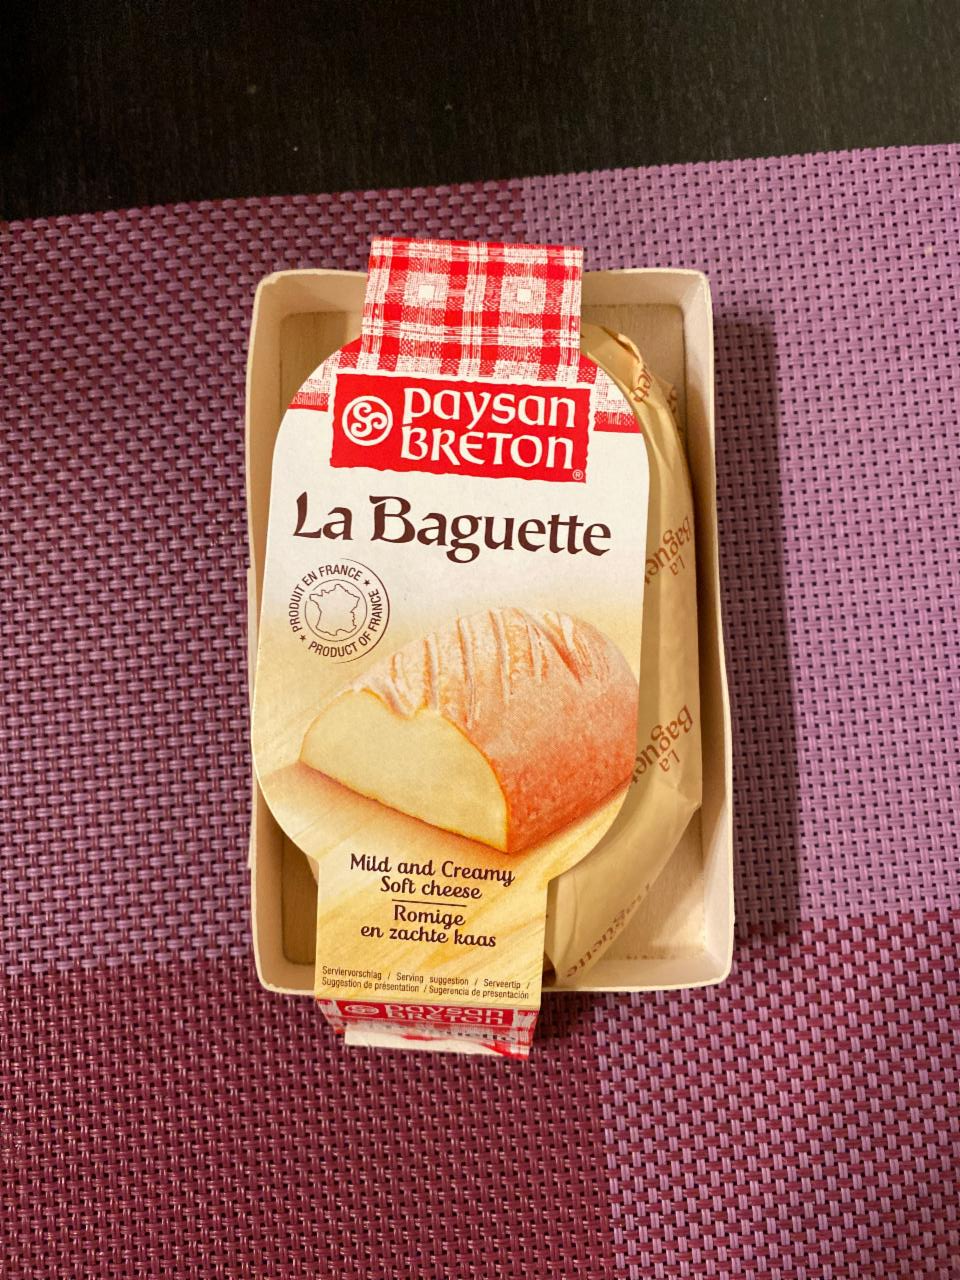 Képek - Paysan Breton La Baguette francia sajtkülönlegesség 200 g